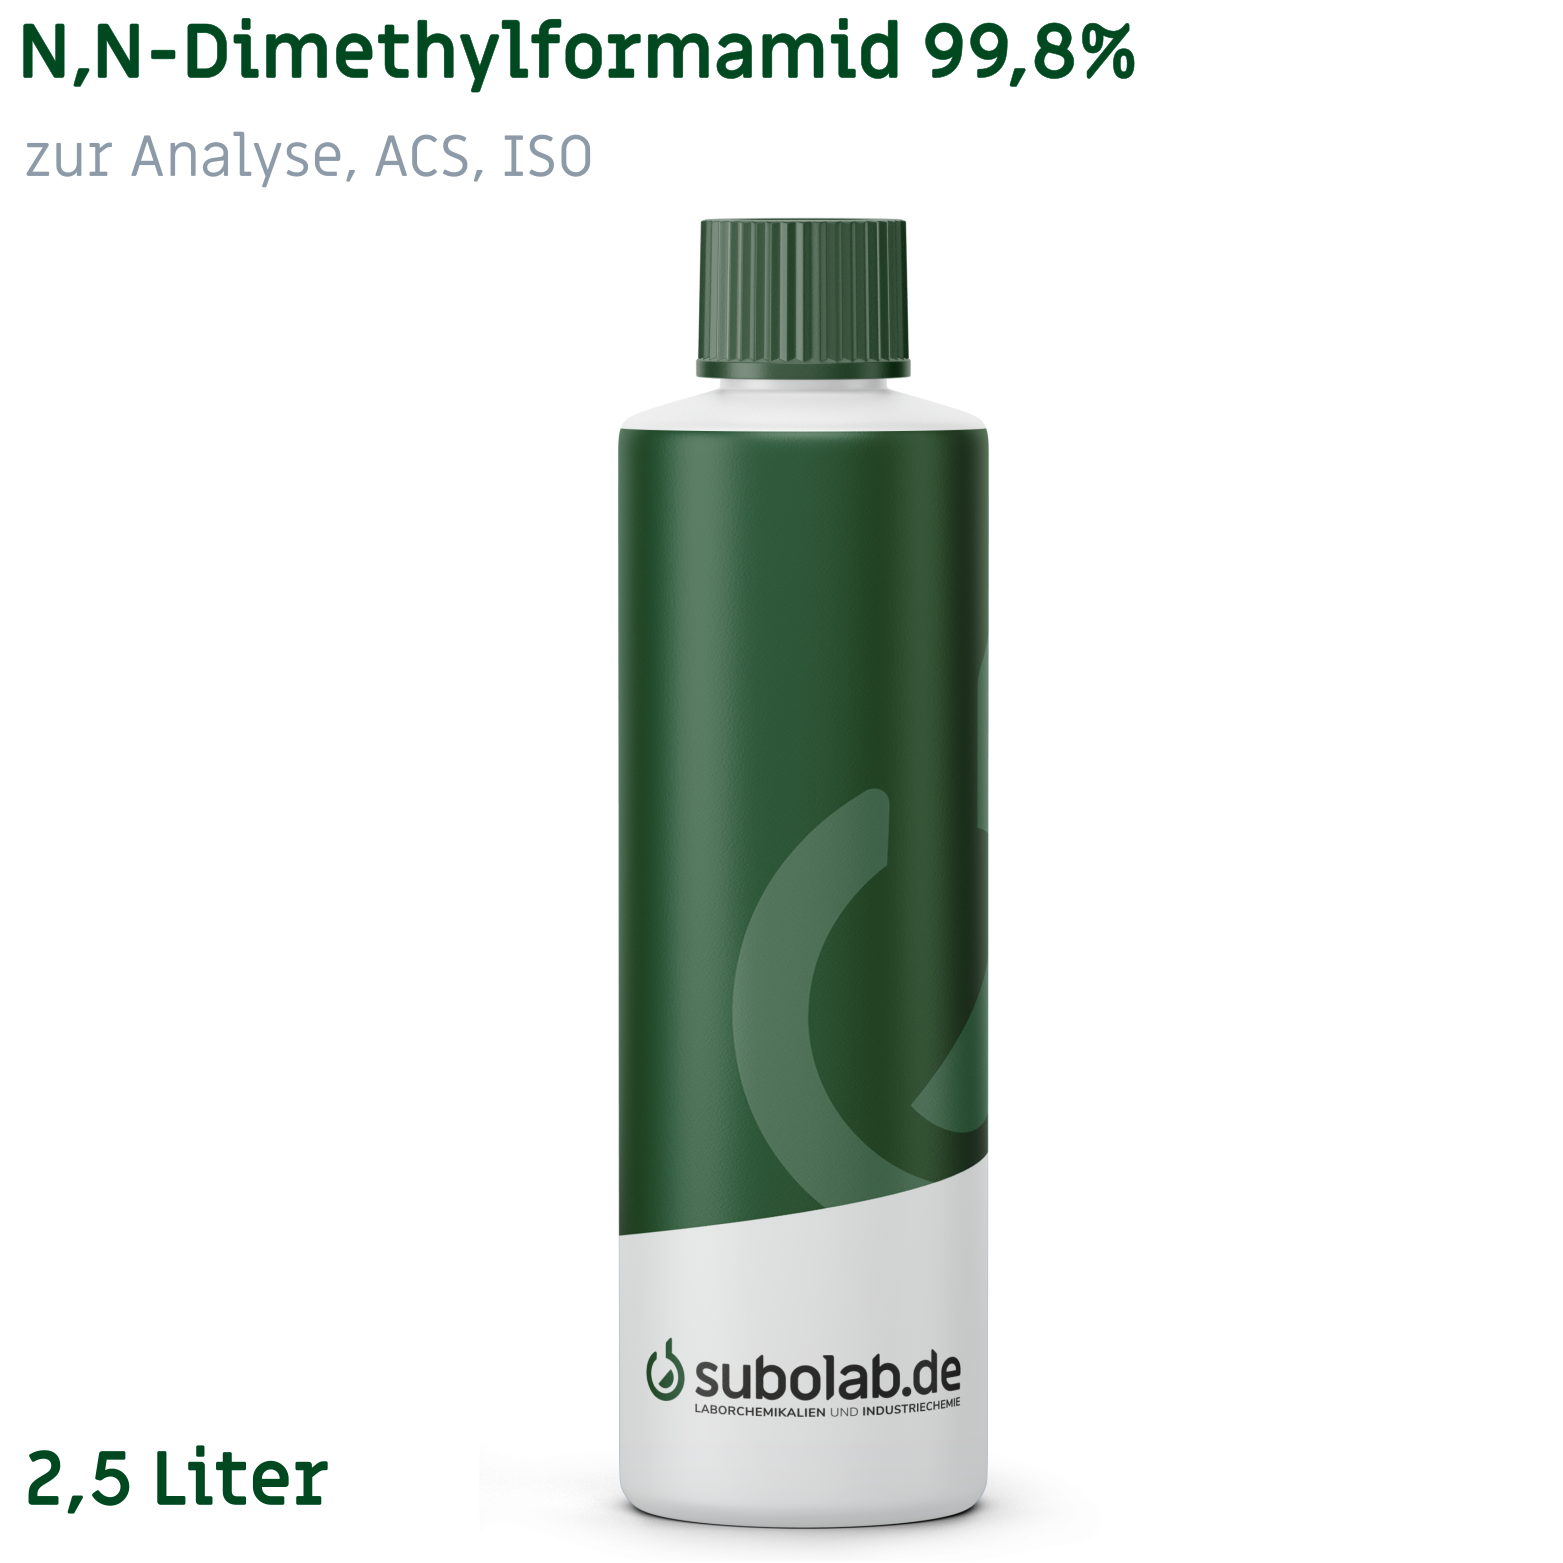 Bild von N,N-Dimethylformamid 99,8% zur Analyse, ACS, ISO (2,5 Liter)